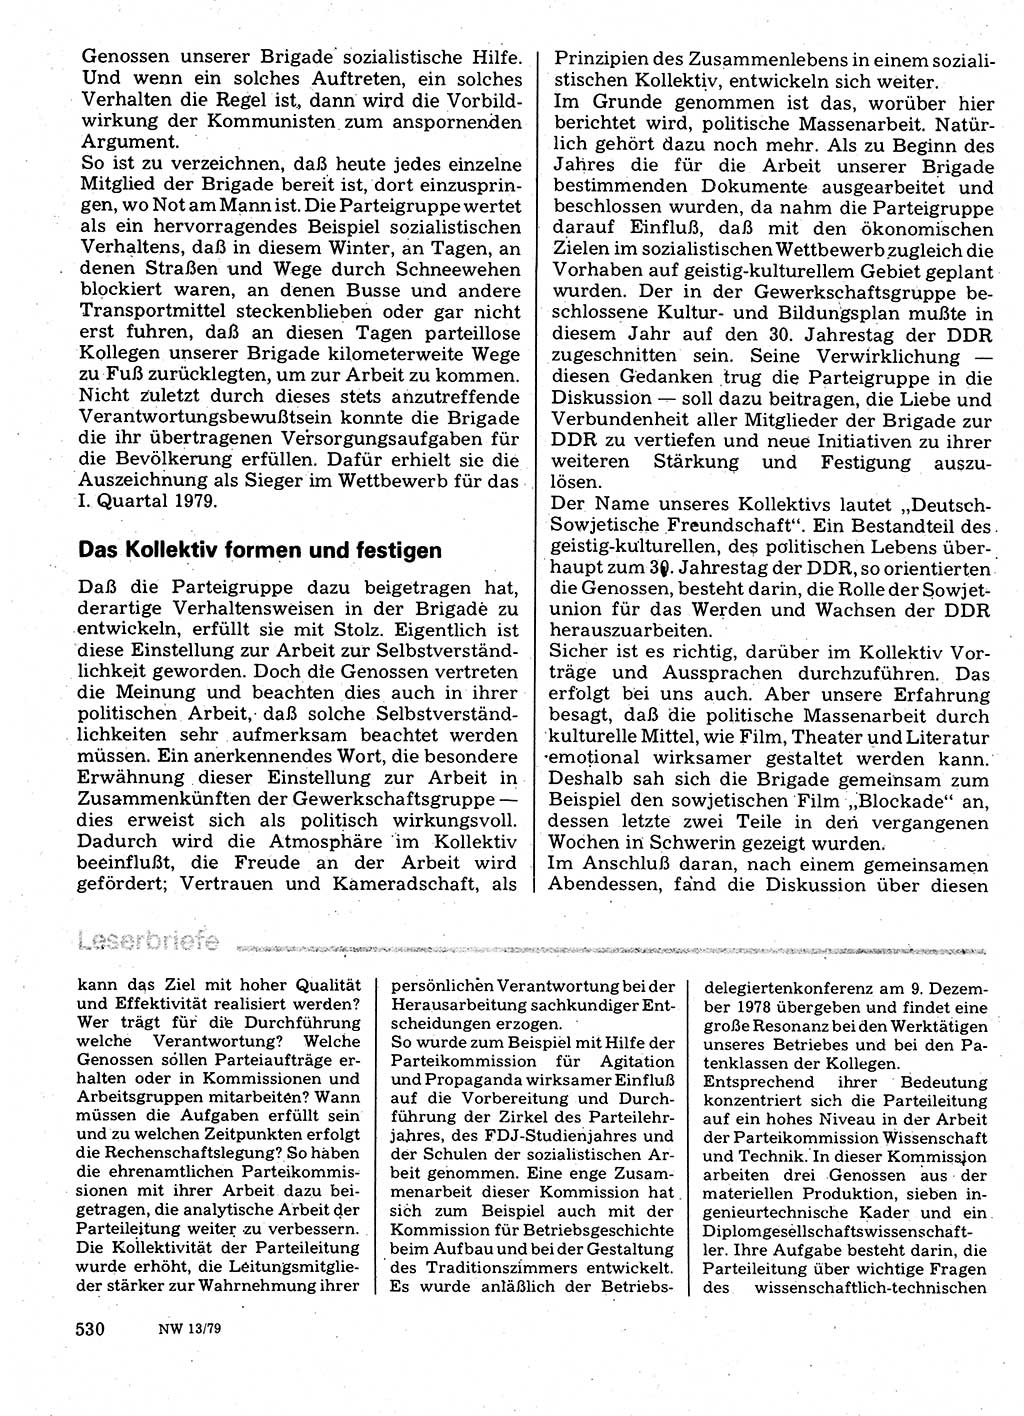 Neuer Weg (NW), Organ des Zentralkomitees (ZK) der SED (Sozialistische Einheitspartei Deutschlands) für Fragen des Parteilebens, 34. Jahrgang [Deutsche Demokratische Republik (DDR)] 1979, Seite 530 (NW ZK SED DDR 1979, S. 530)